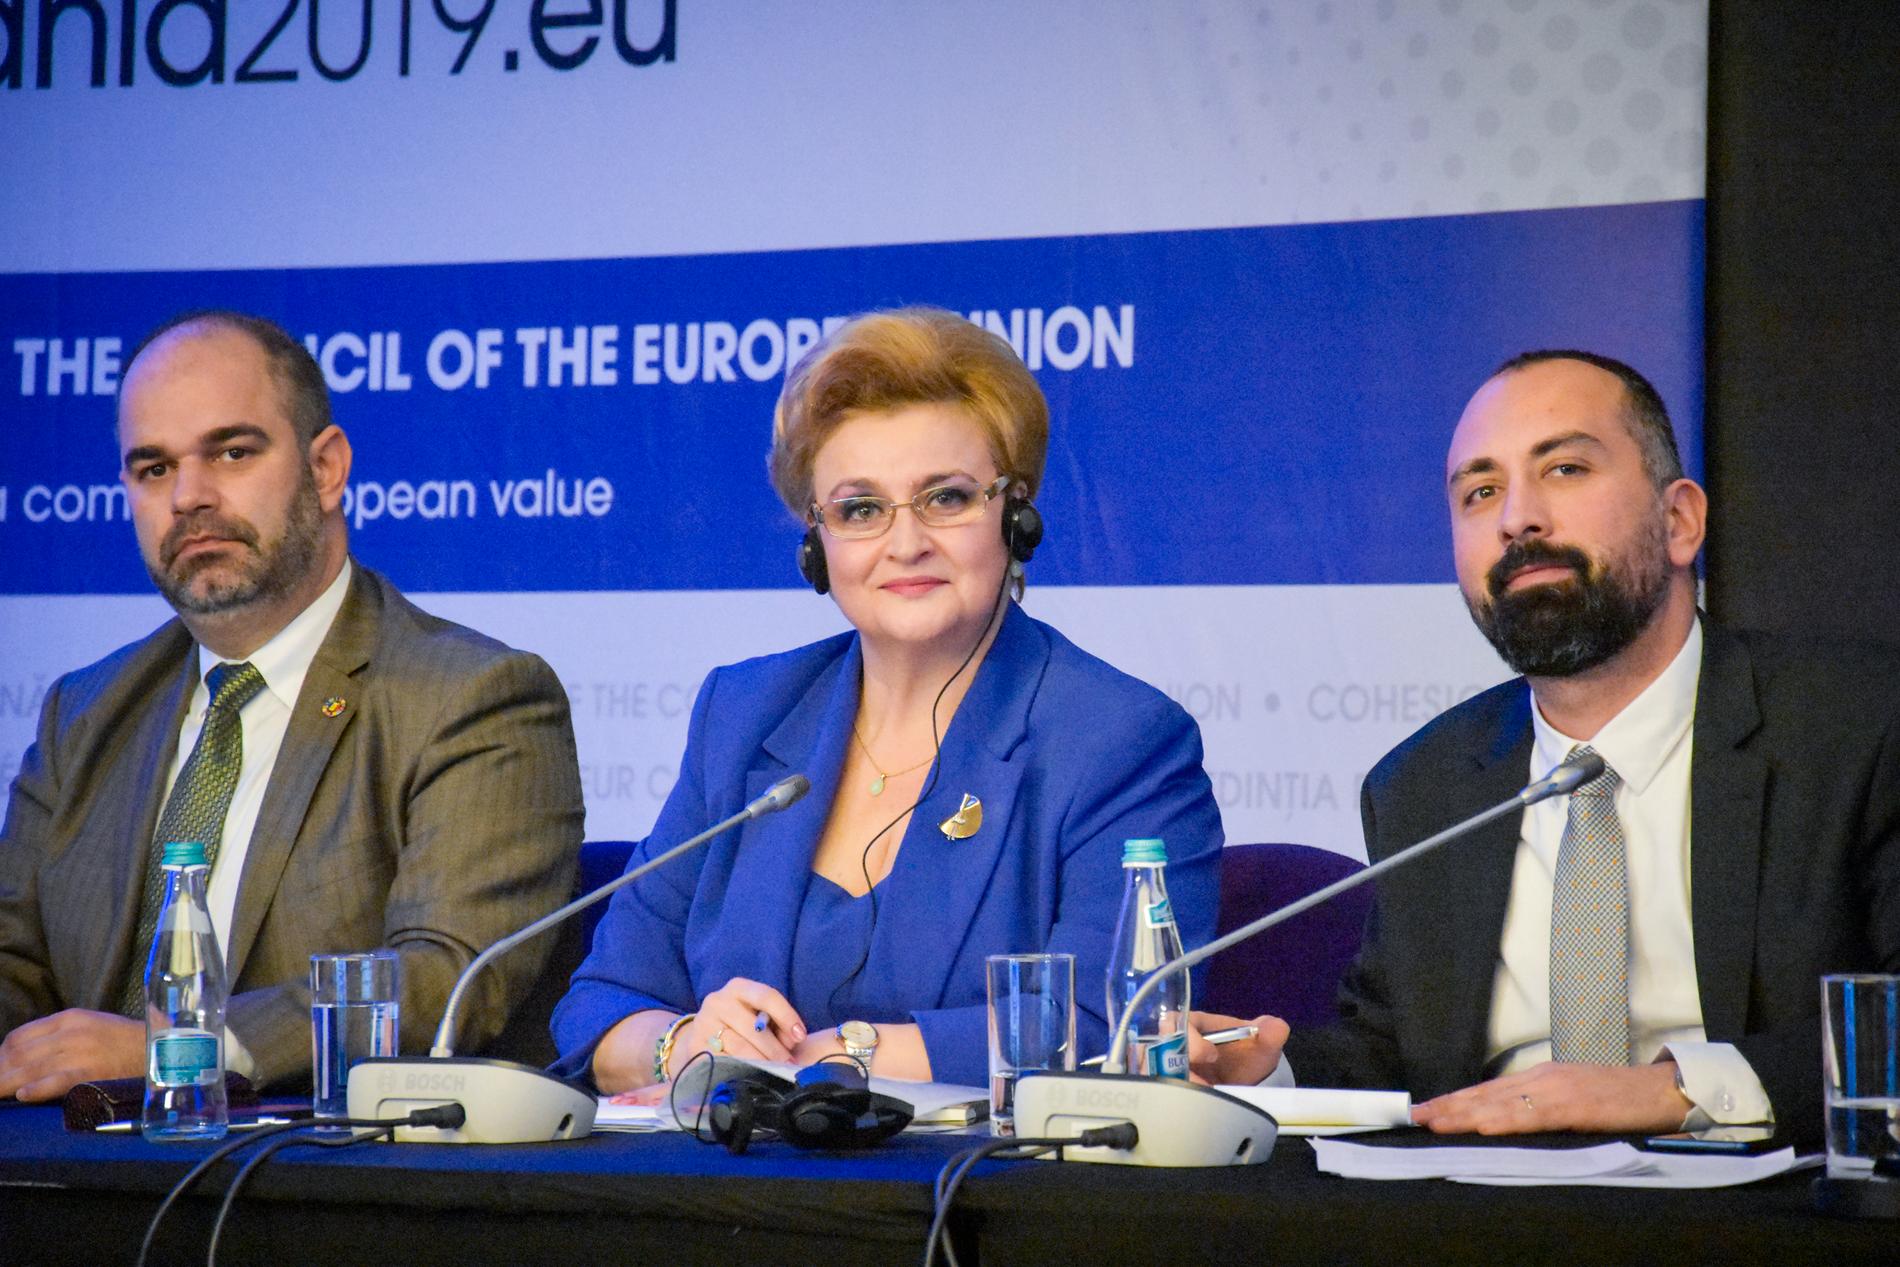 Gratiela Gavrilescu (mitten) är vice premiärminister och miljöminister i Rumänien.